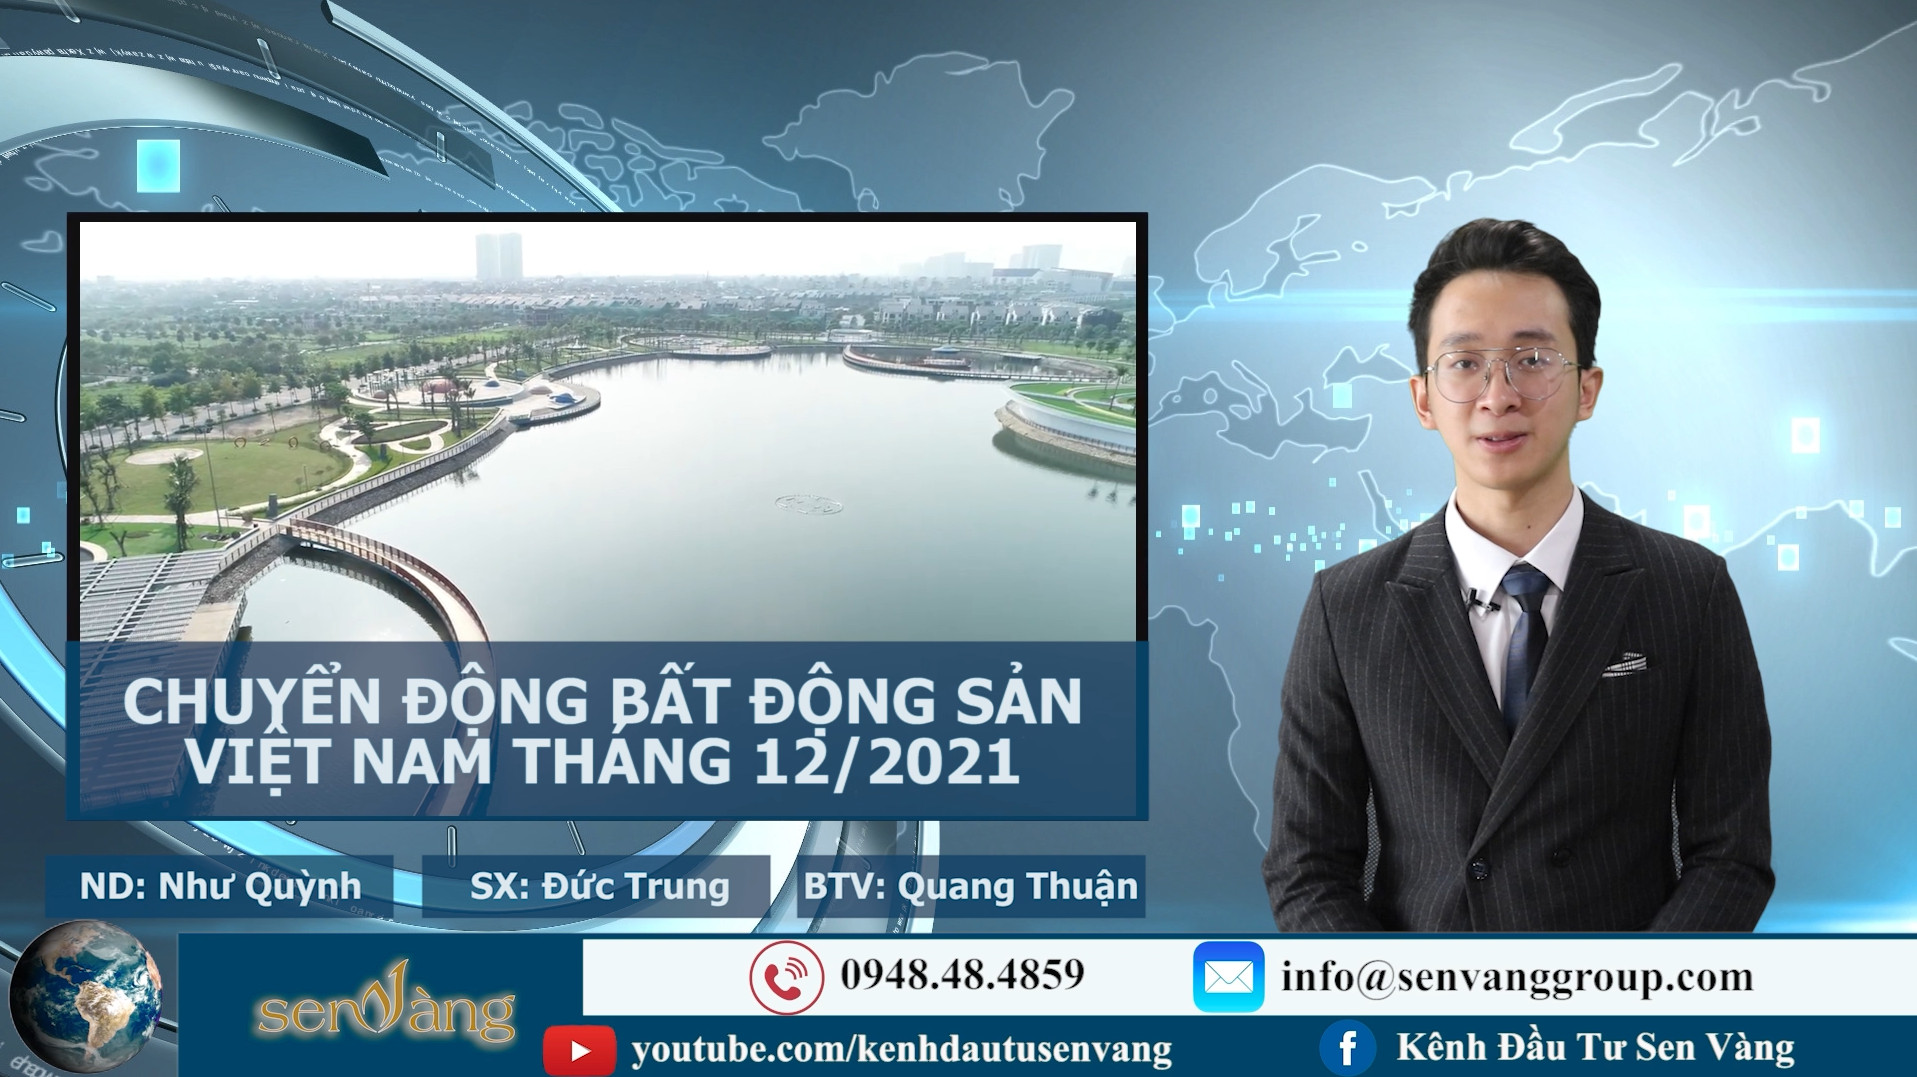 Bản tin chuyển động bất động sản Việt Nam tháng 12/2021